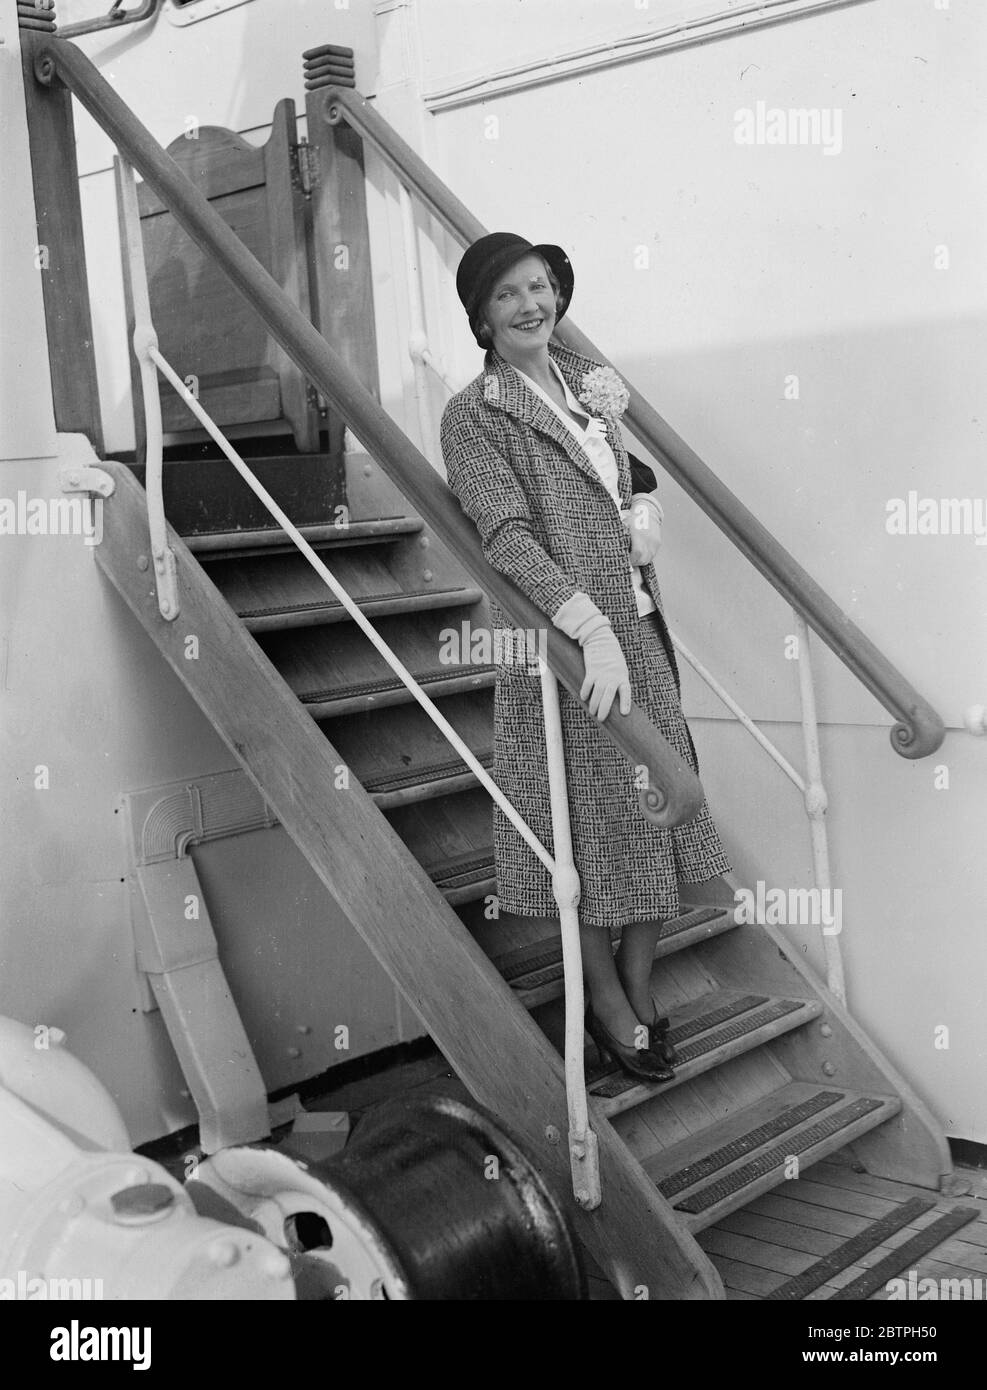 Juni kehrt nach England zurück. Juni, die bekannte Schauspielerin, die vor kurzem von Lord Inverclyde von Nevada geschieden wurde, eine Scheidung nicht in England anerkannt, hat nach England zurückgekehrt, um wieder auf der Bühne hier erscheinen. Juni winkt mit ihrem Gruß nach England bei der Ankunft in Southampton an Bord des Liners Mapress of Britain . 15 April 1932 . Stockfoto